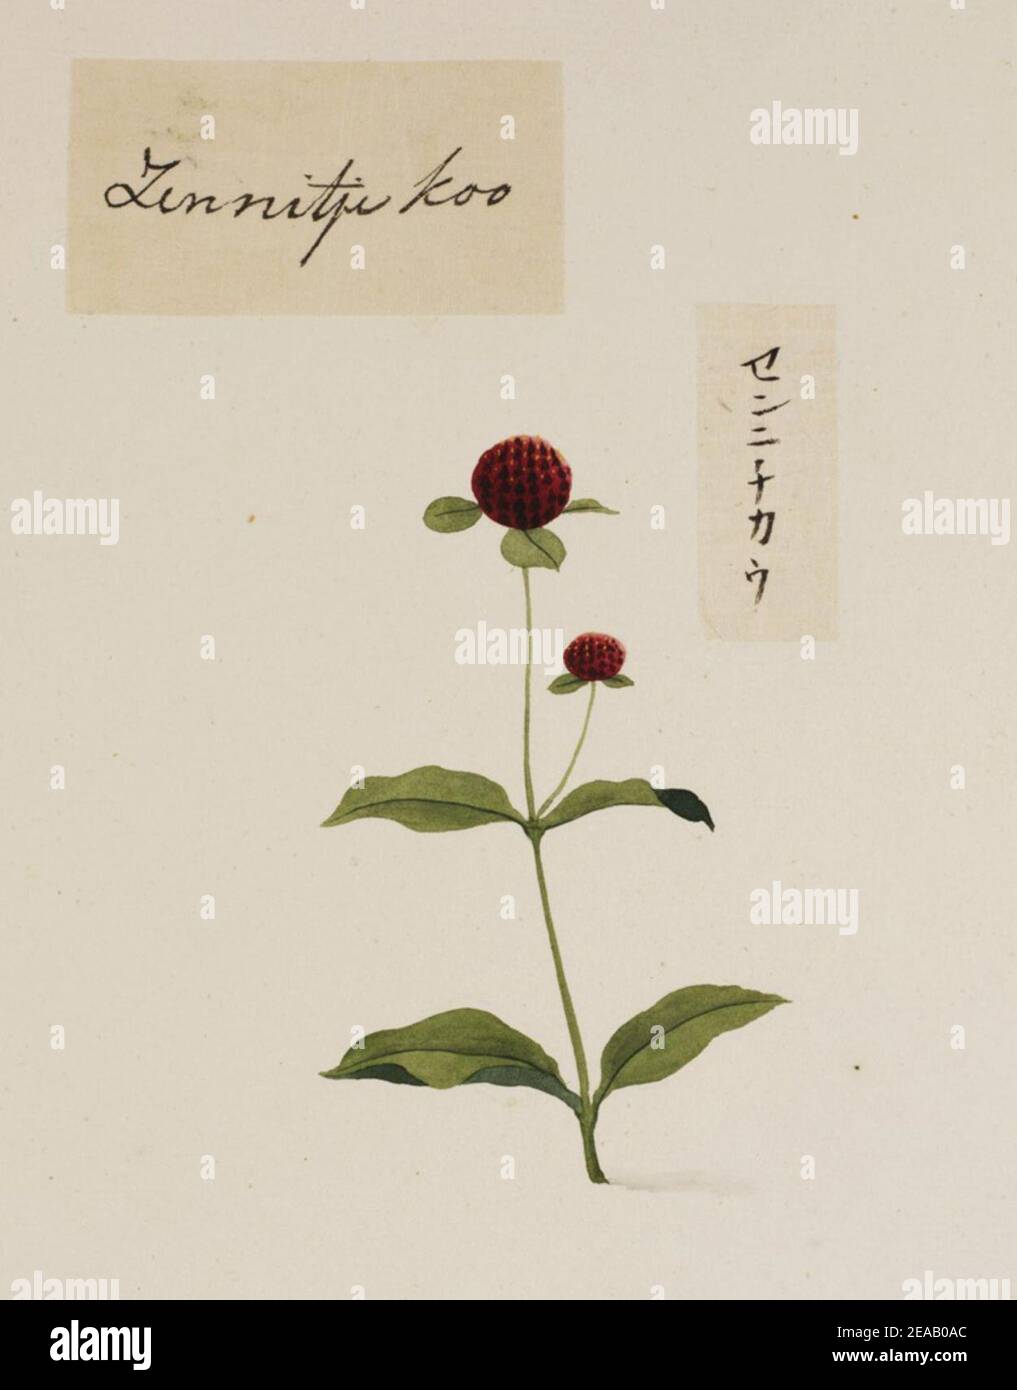 .779 - Gomphrena globosa - Kawahara Keiga - 1823 - 1829 - pencil drawing - water colour. Stock Photo